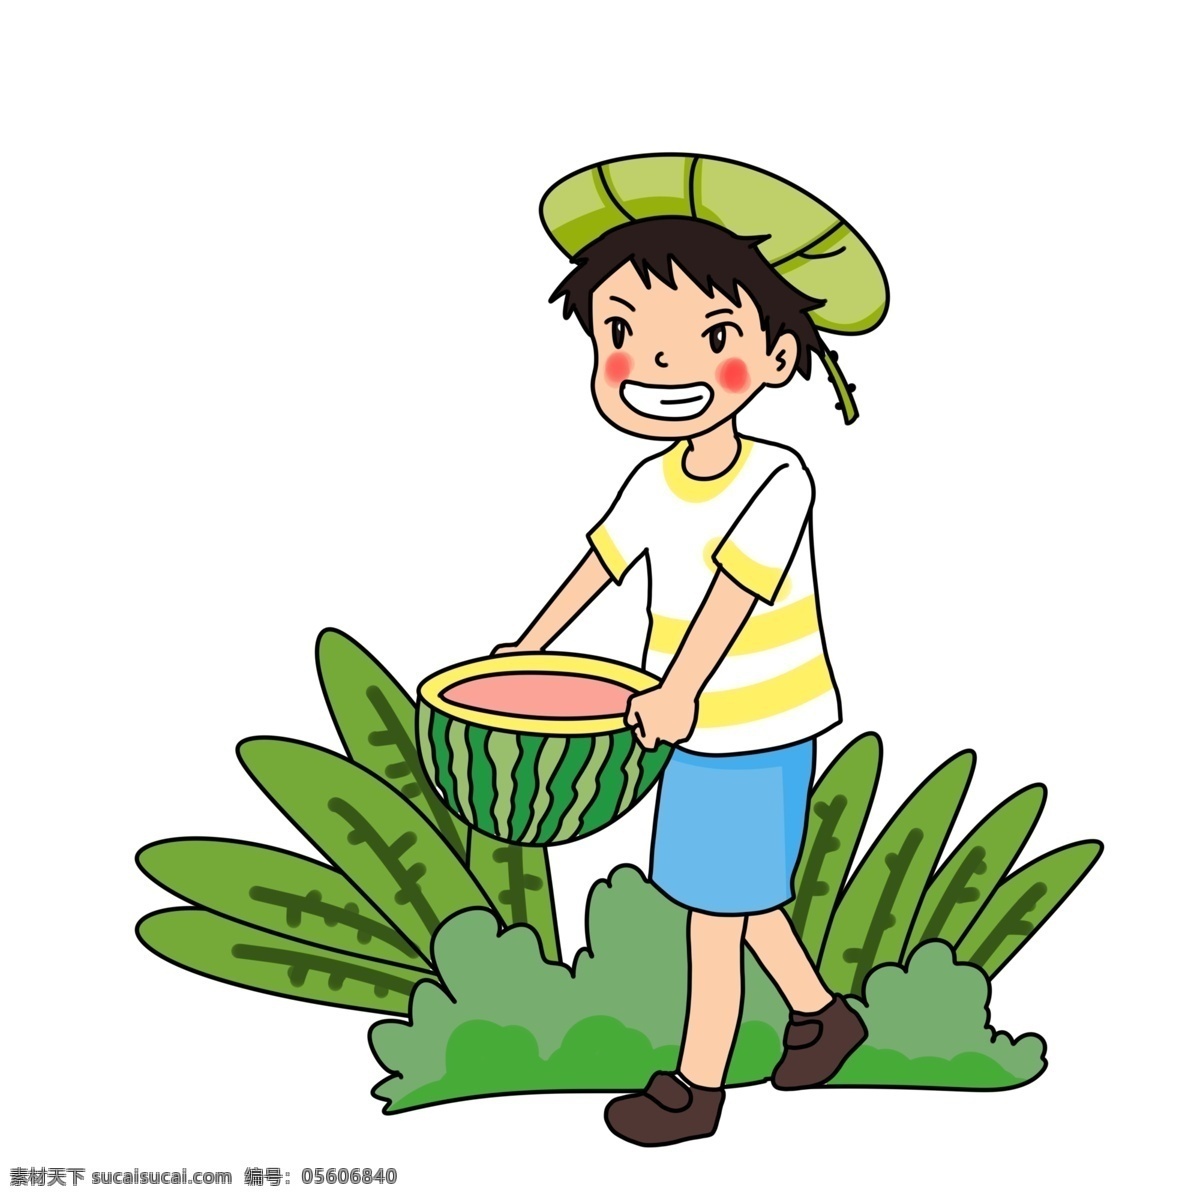 夏日 吃 西瓜 开心 少年 夏天来了 吃西瓜 人物 夏天 夏季 夏至 大暑 小孩 小暑 清爽 草丛 草地 解暑 零食